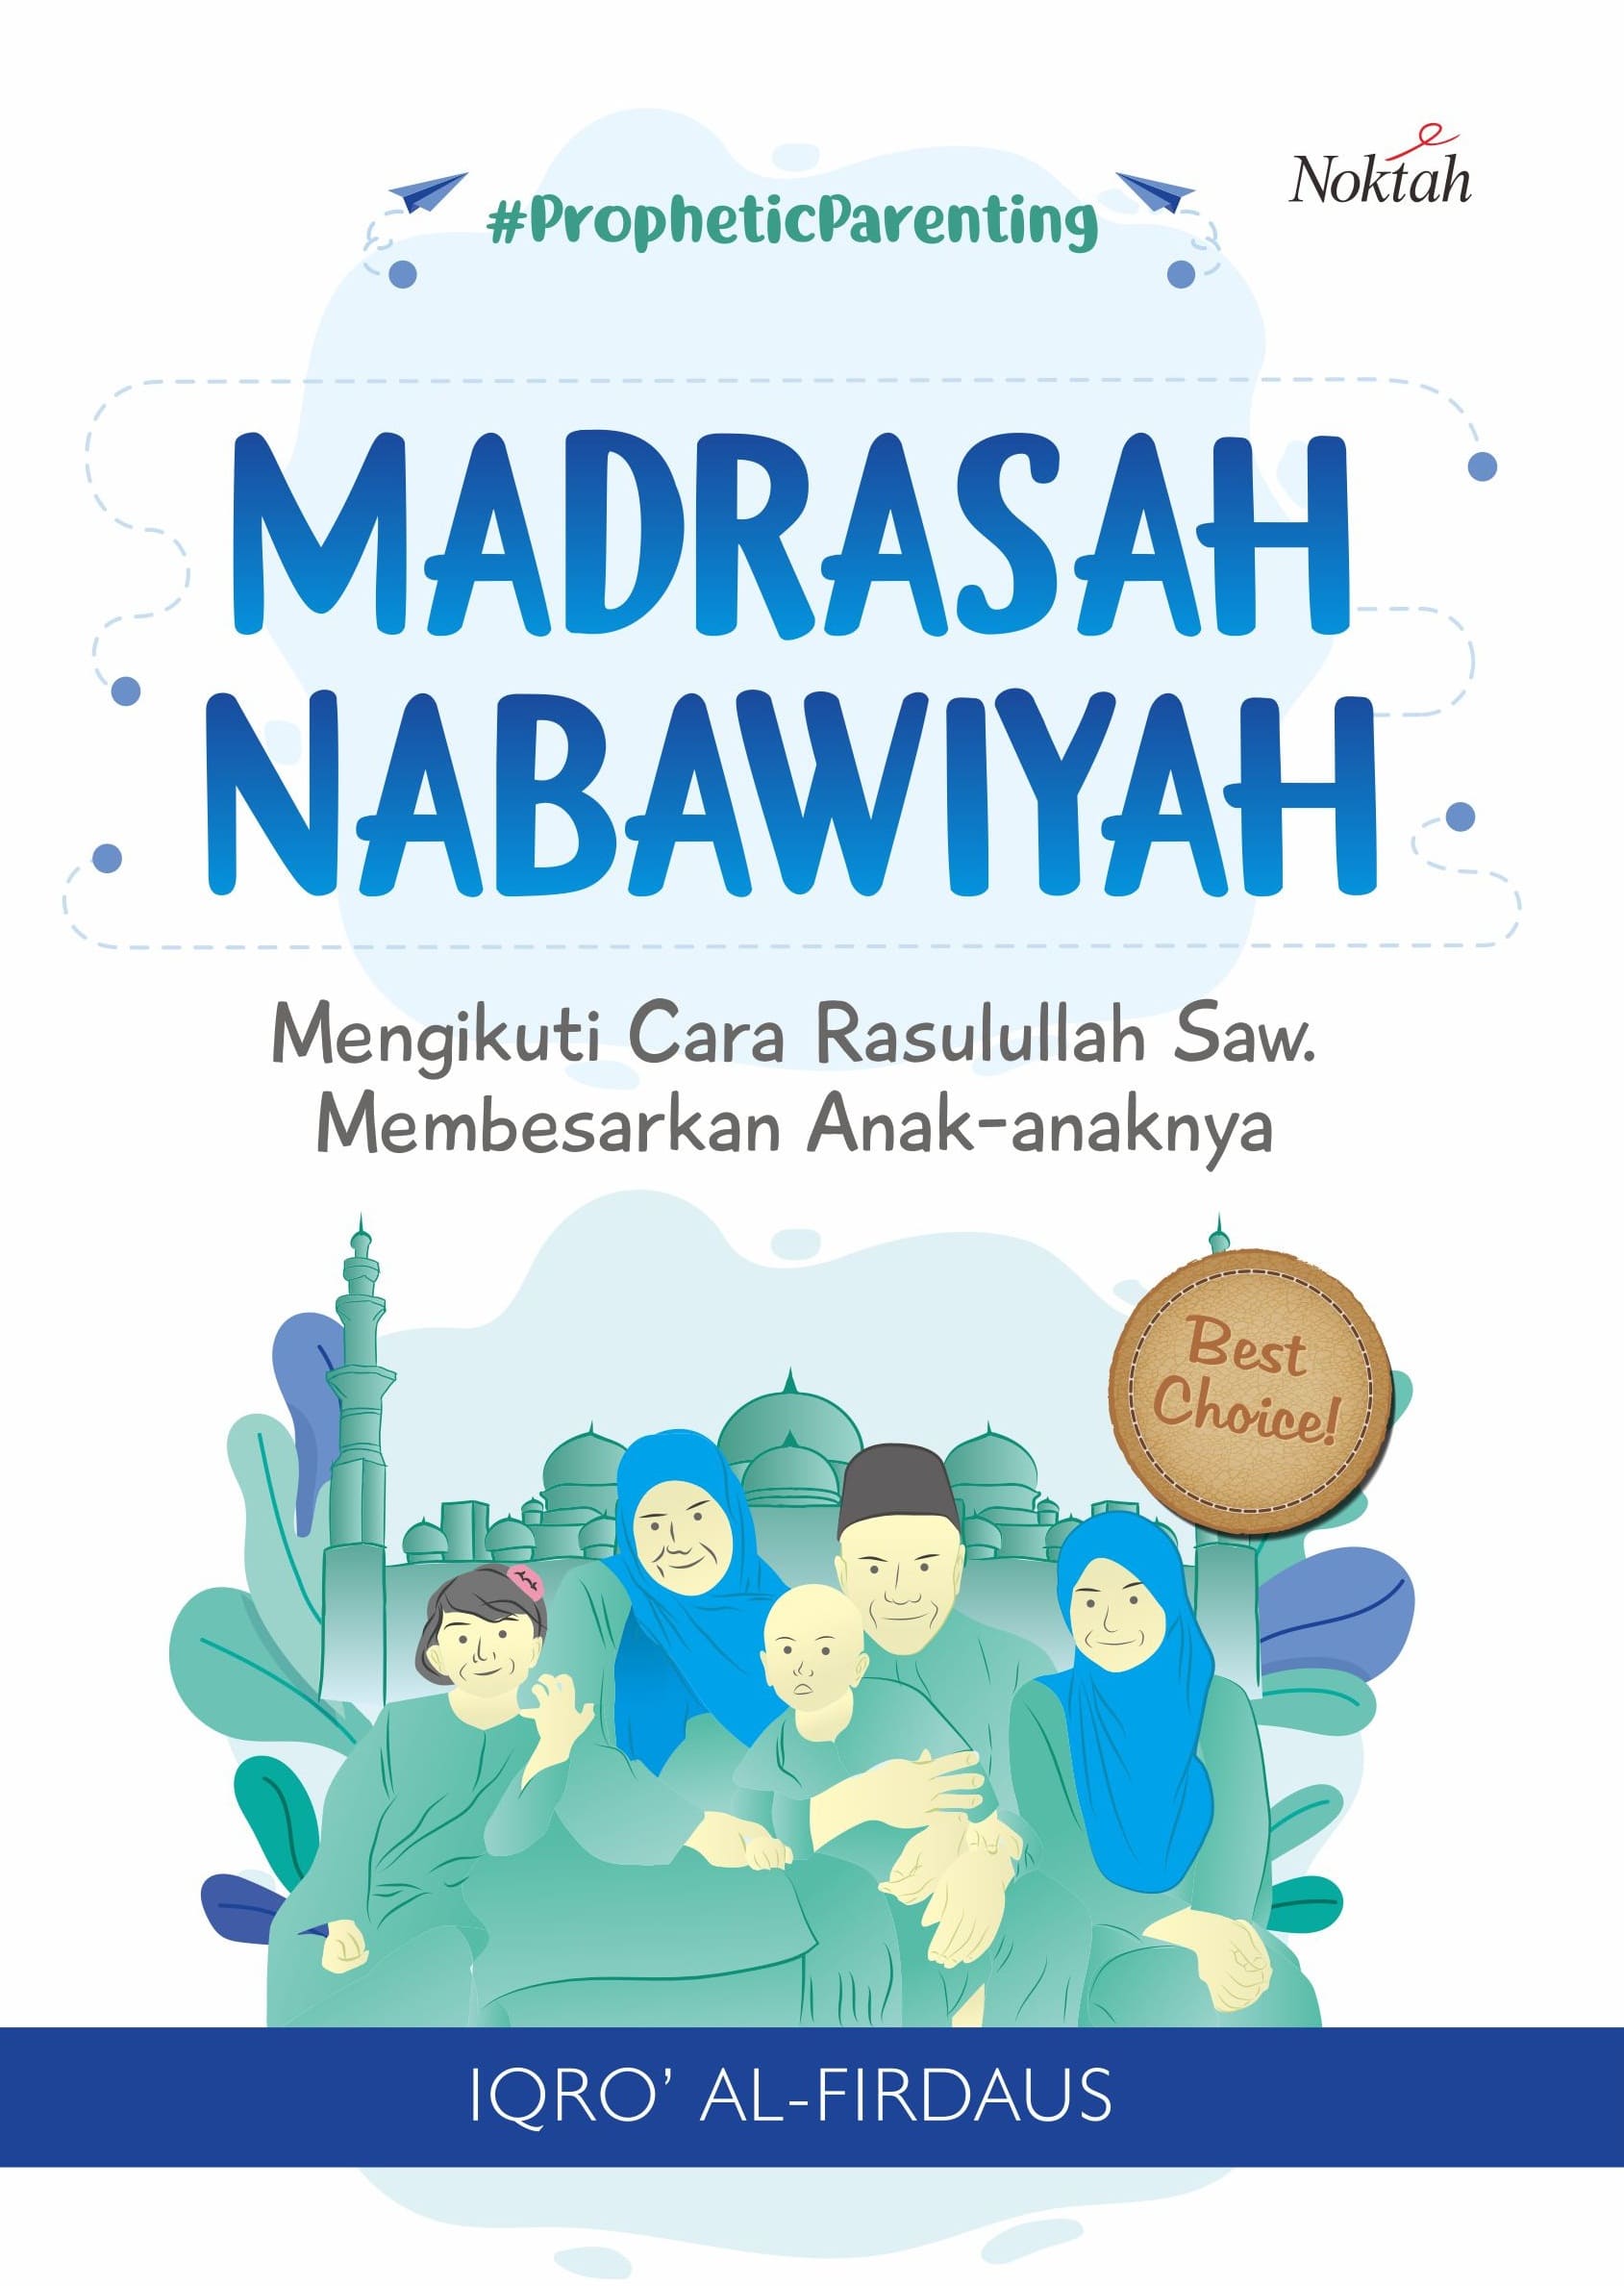 Madrasah nabawiyah